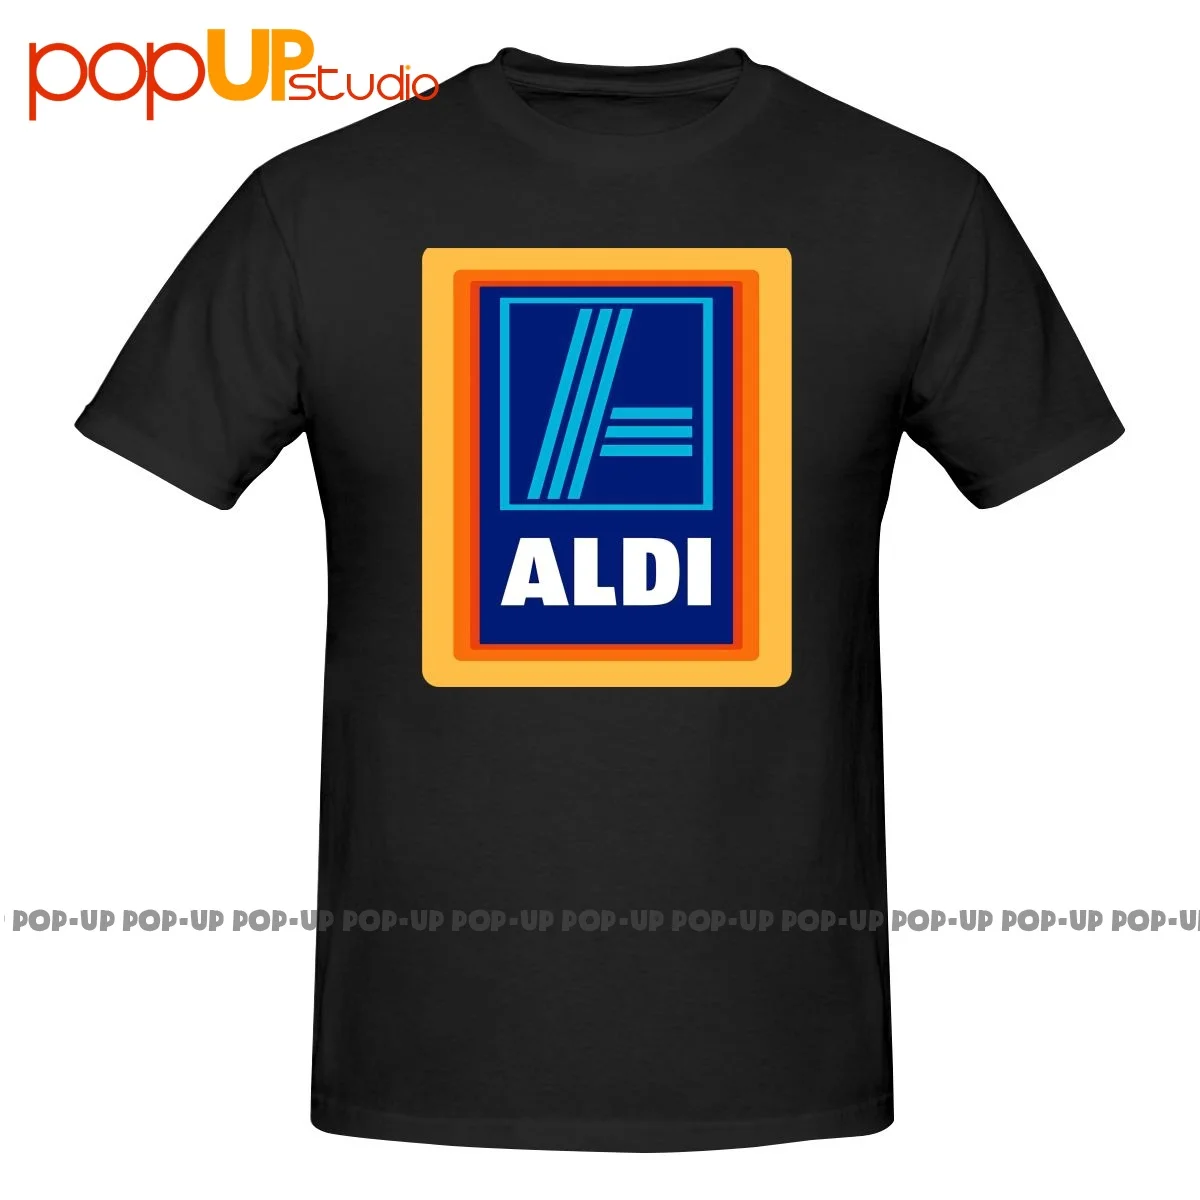 Продуктовый Магазин Aldi Market, супермаркет, Фанатская рубашка, футболка, подарок, Модный бестселлер премиум-класса